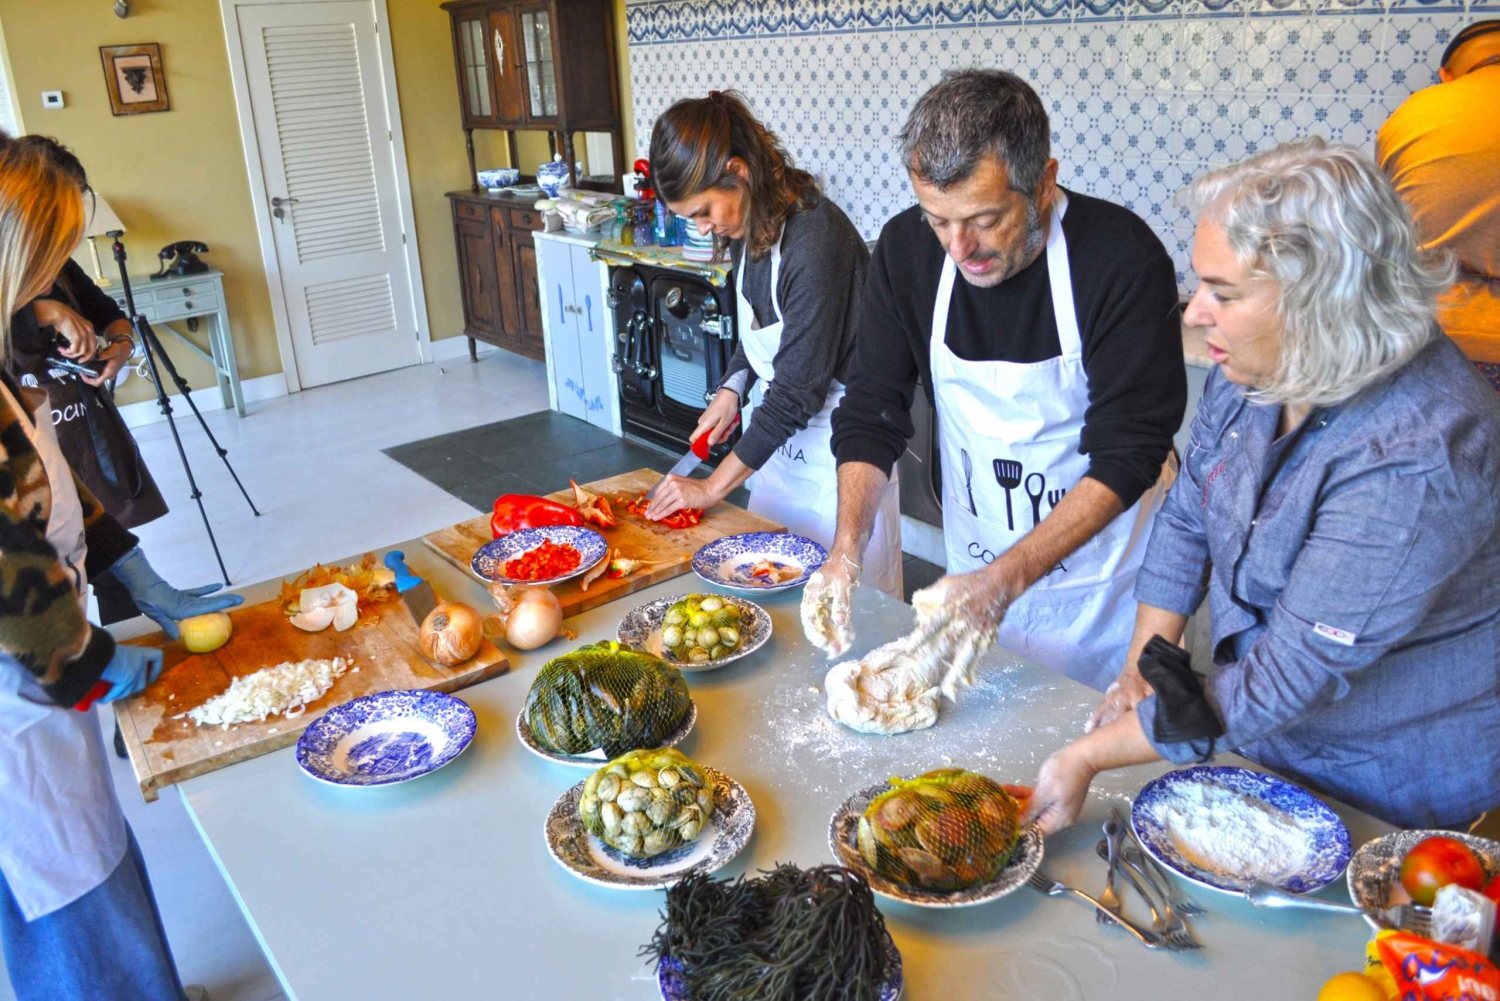 Pontevedra: Galicische kookcursus met chef-kokinstructeur